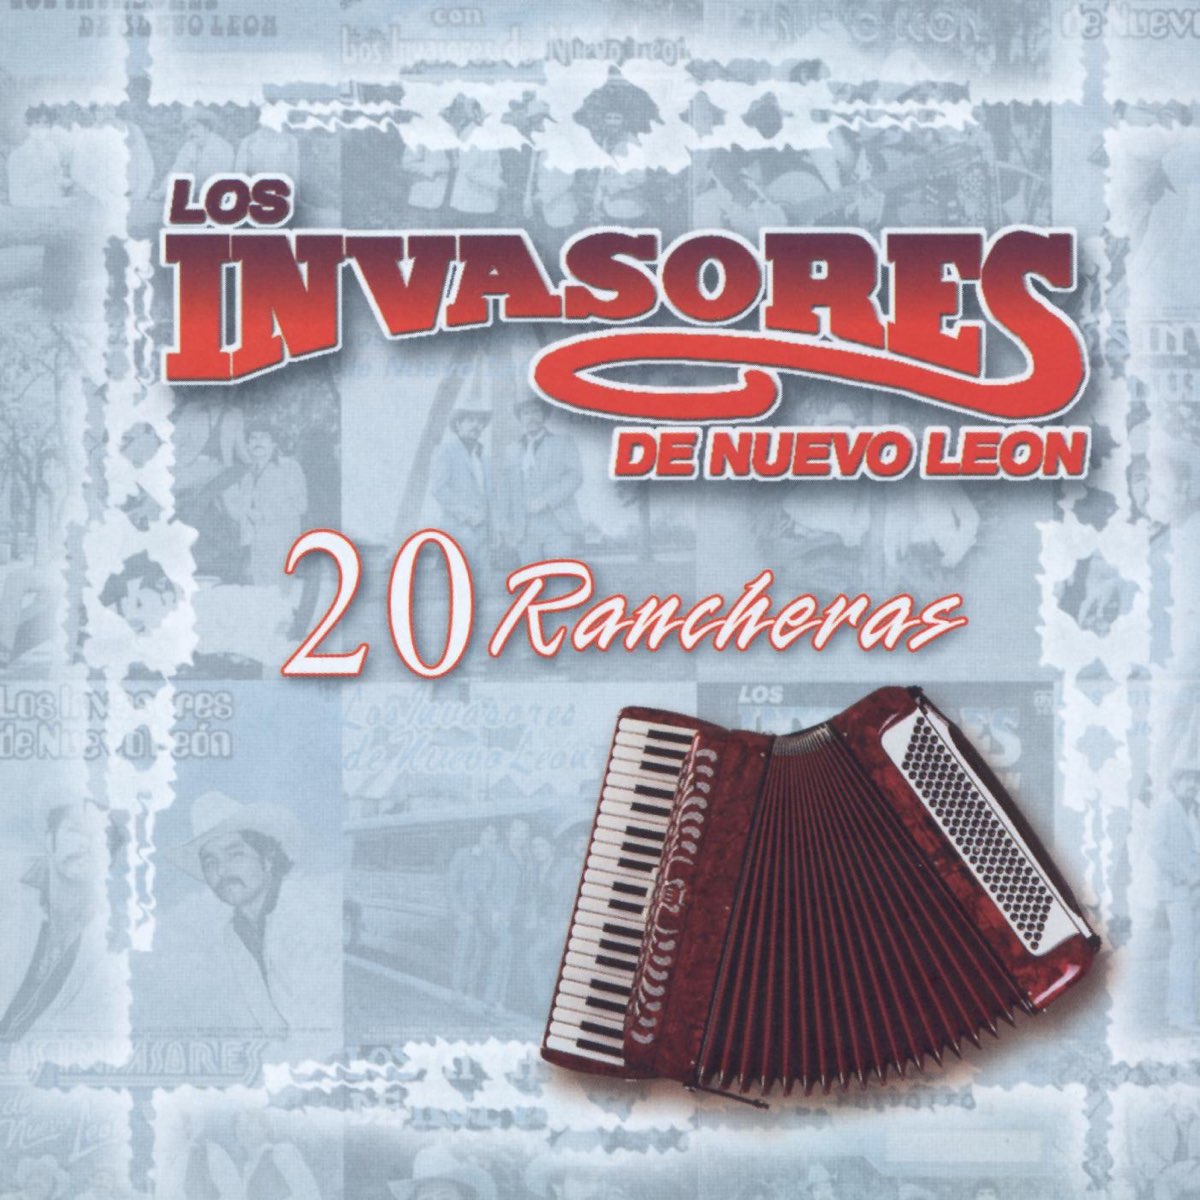 Los Invasores de Nuevo Leon: 20 Rancheras - Album by Los Invasores de Nuevo  León - Apple Music